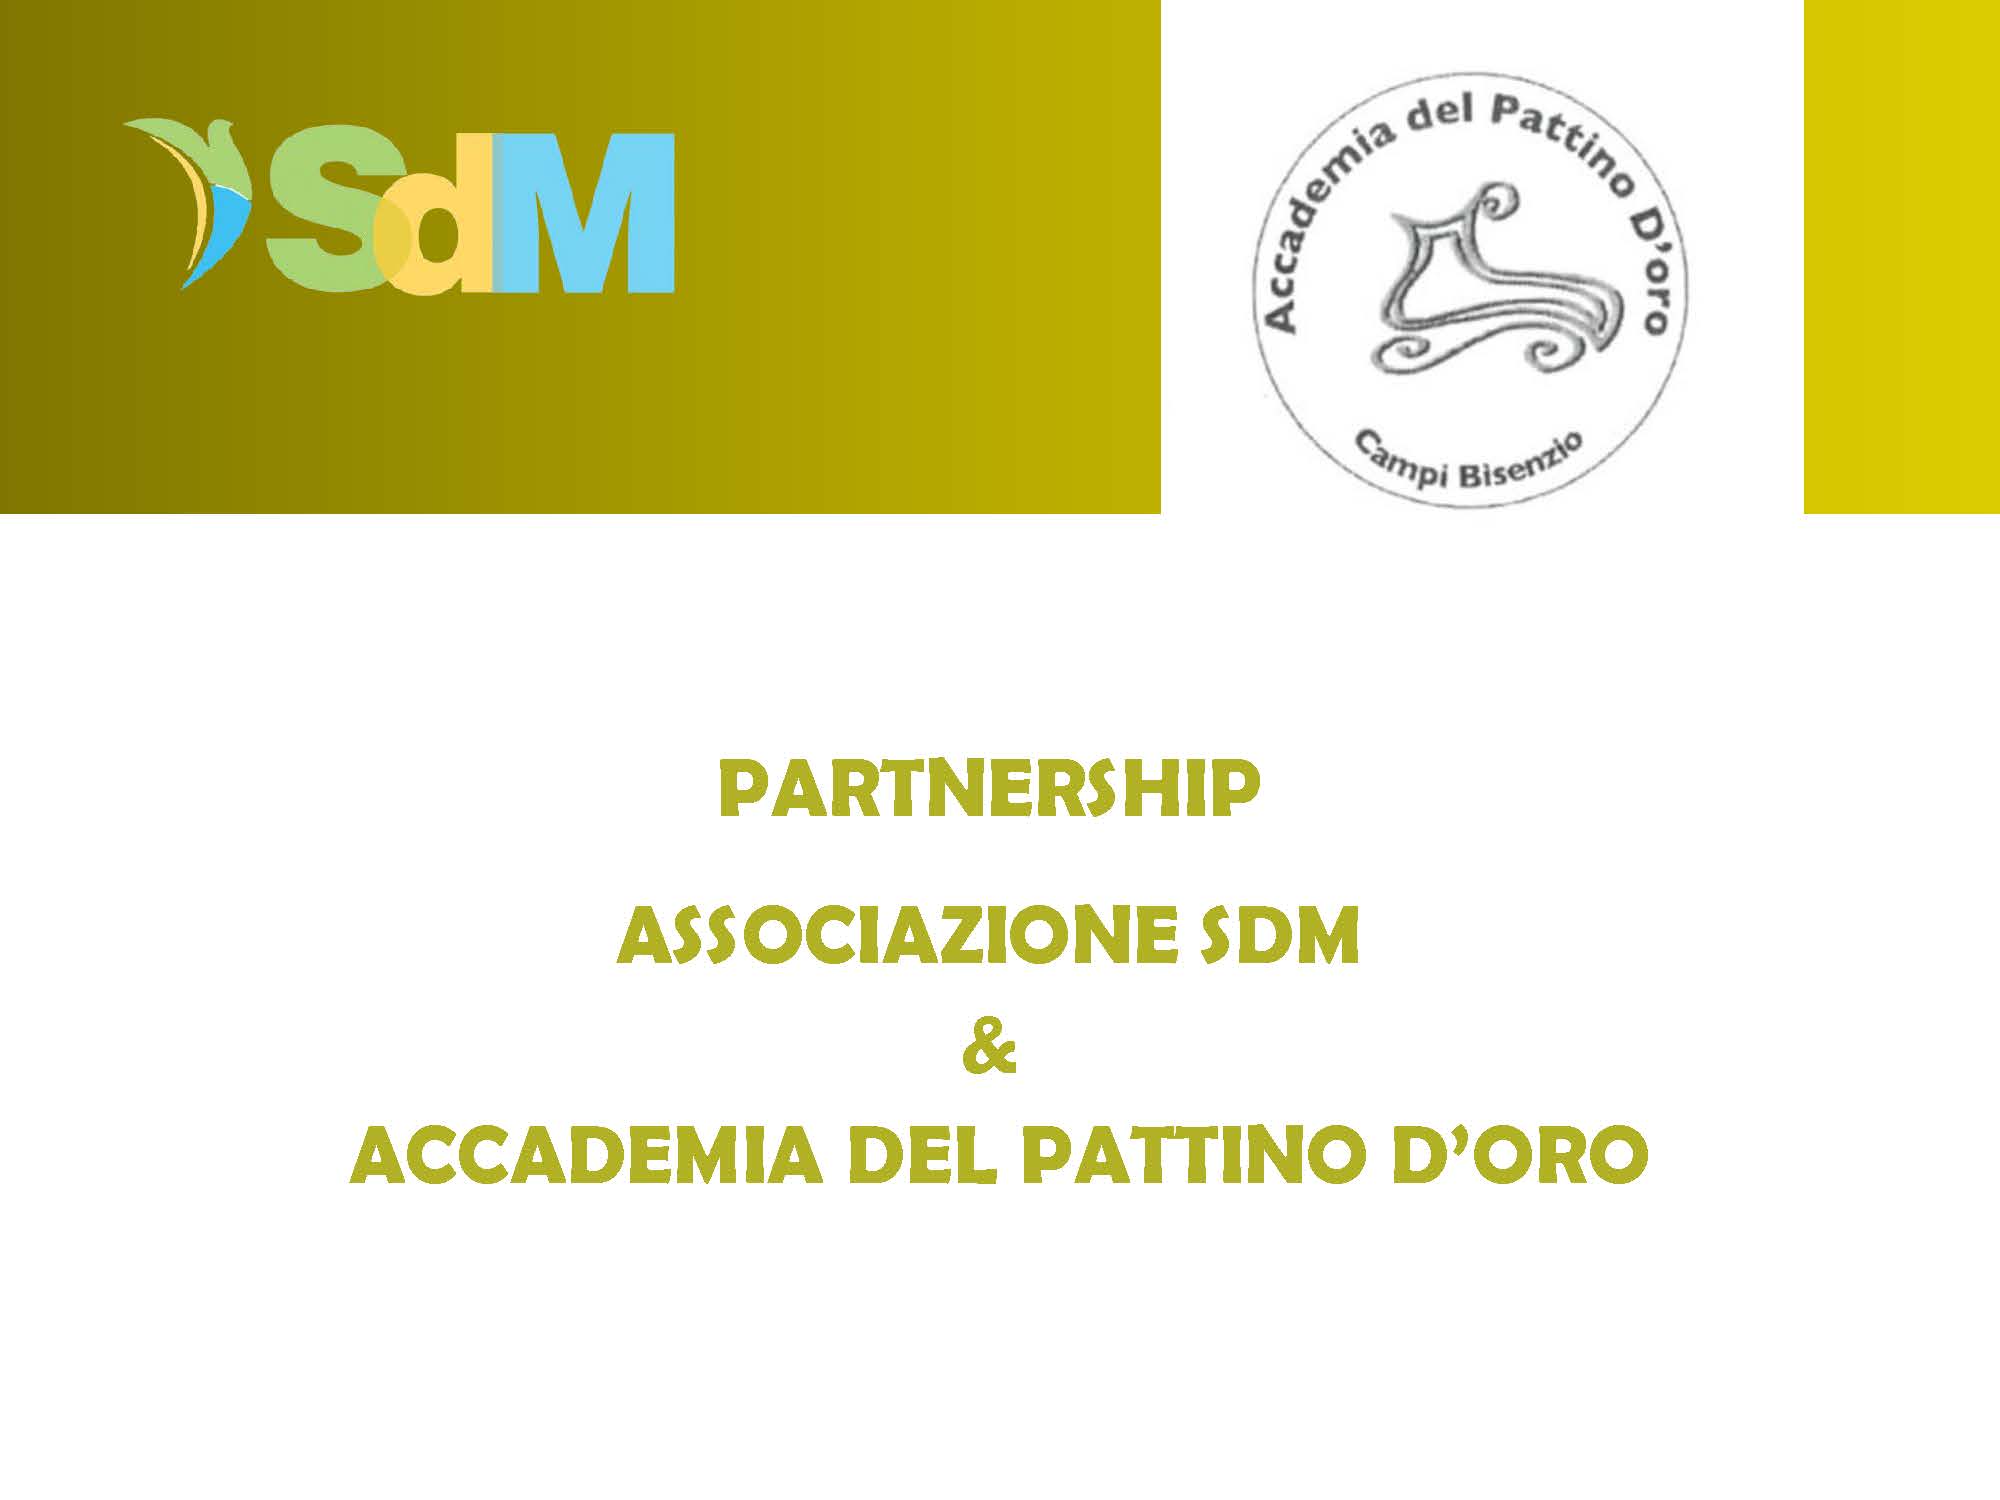 SDM_partnership_con_Accademia_del_Pattinaggio_doro_Pagina_1.jpg